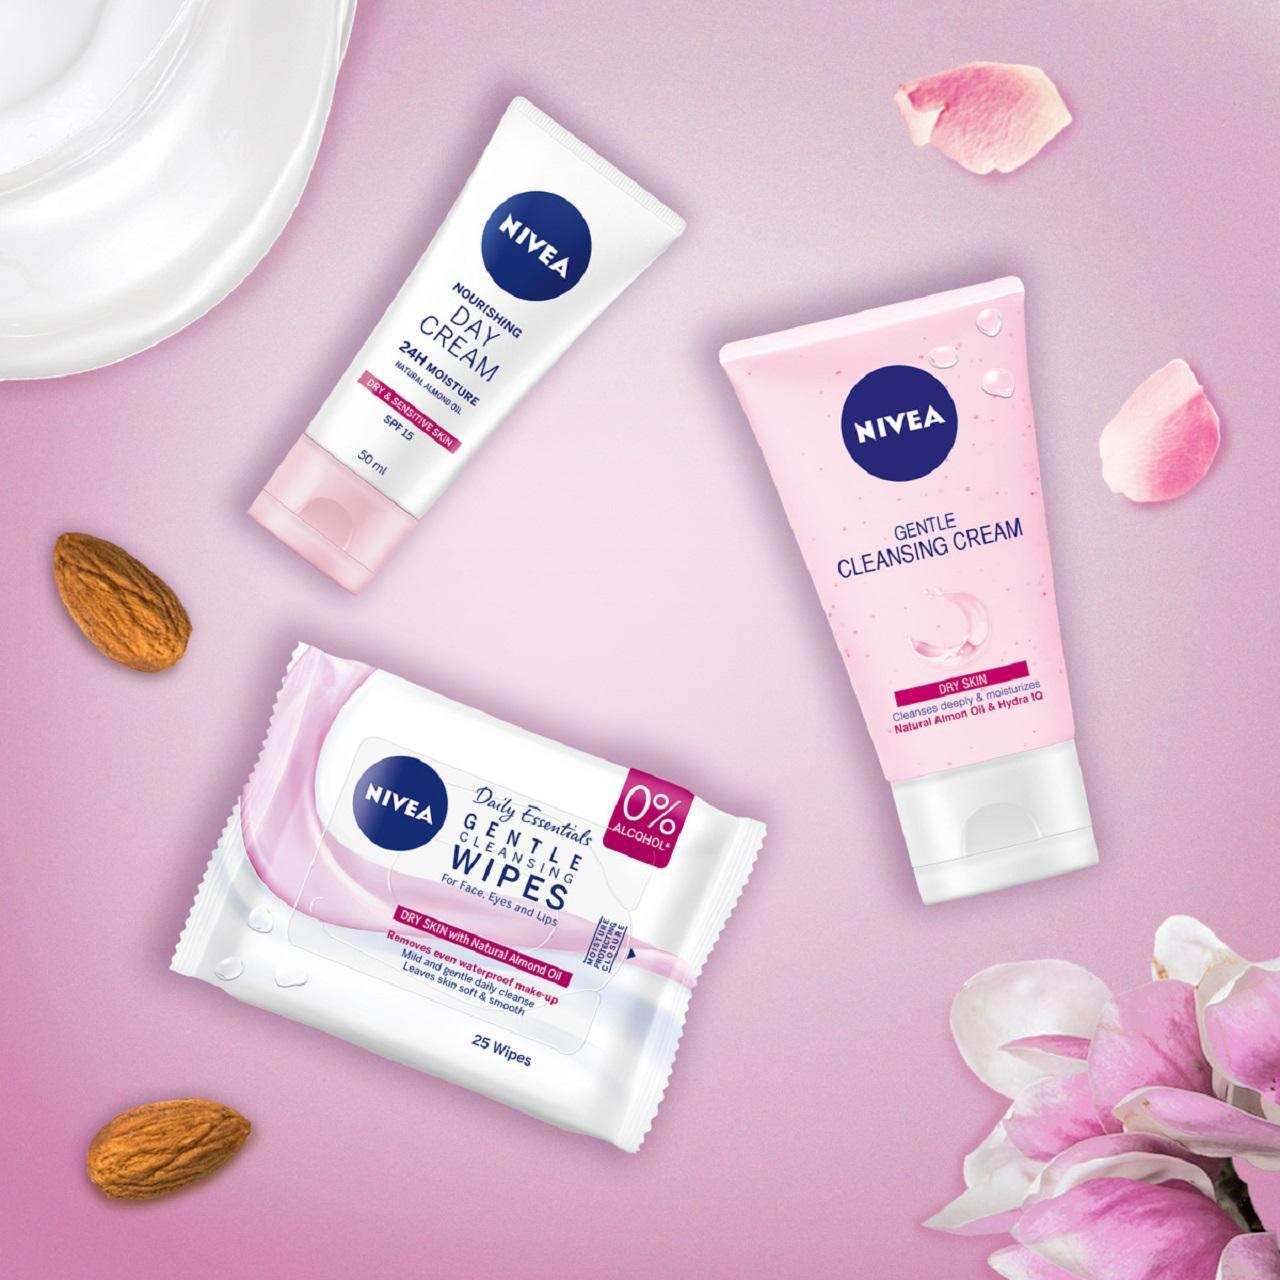 NIVEA Day Cream Face Moisturiser for Dry and Sensitive Skin SPF15 50ml